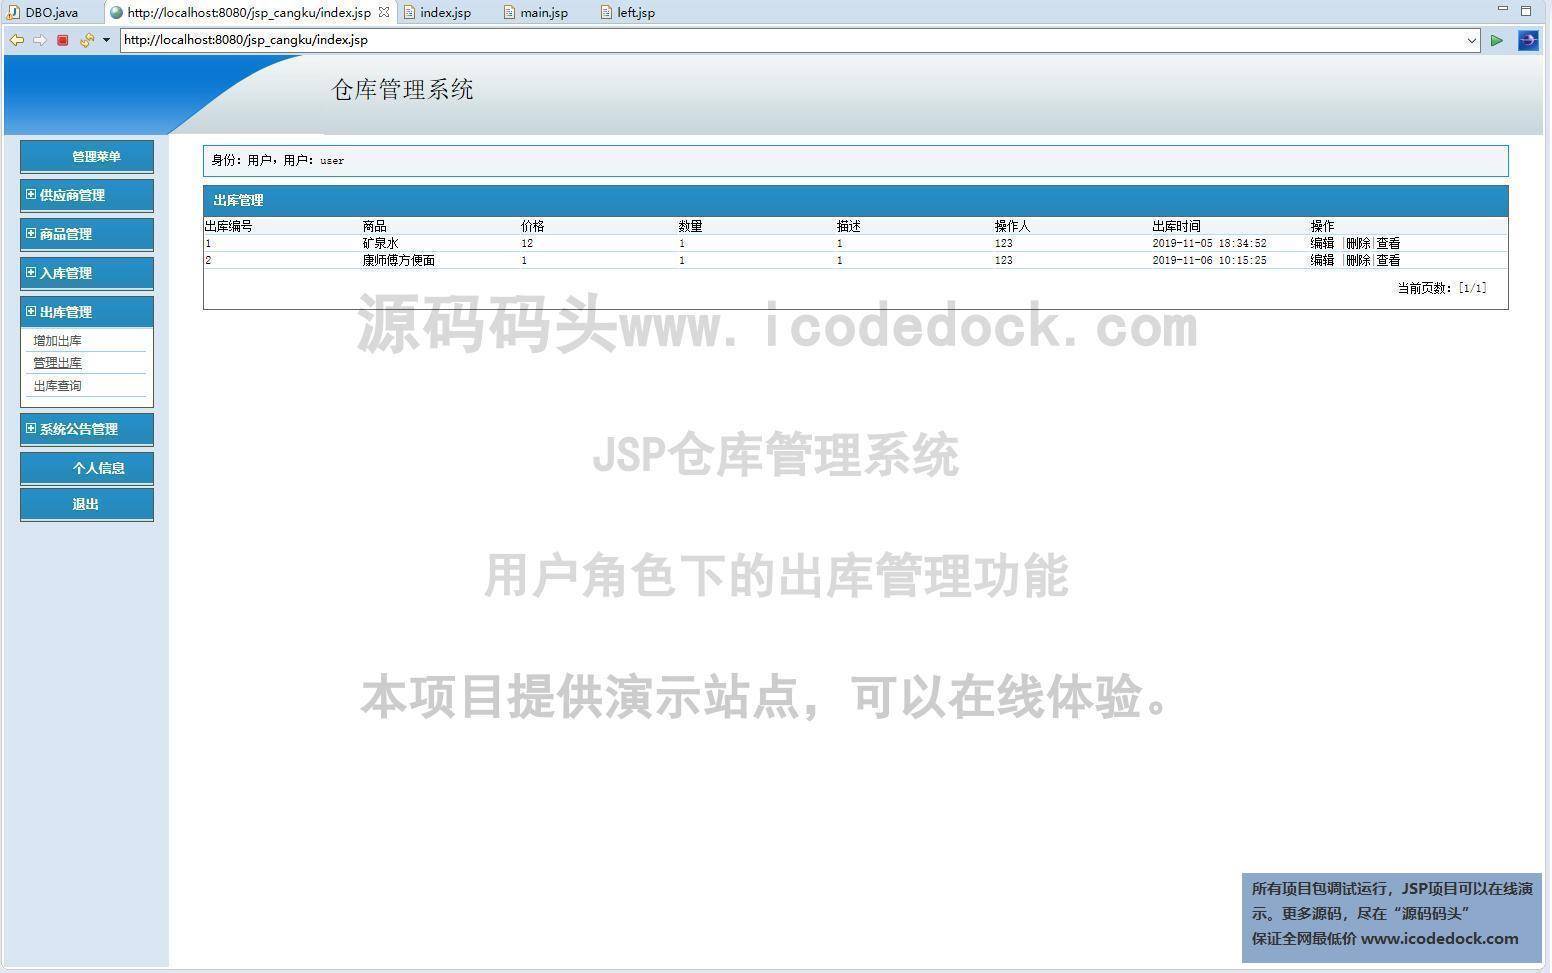 源码码头-JSP仓库管理系统-用户角色-出库管理